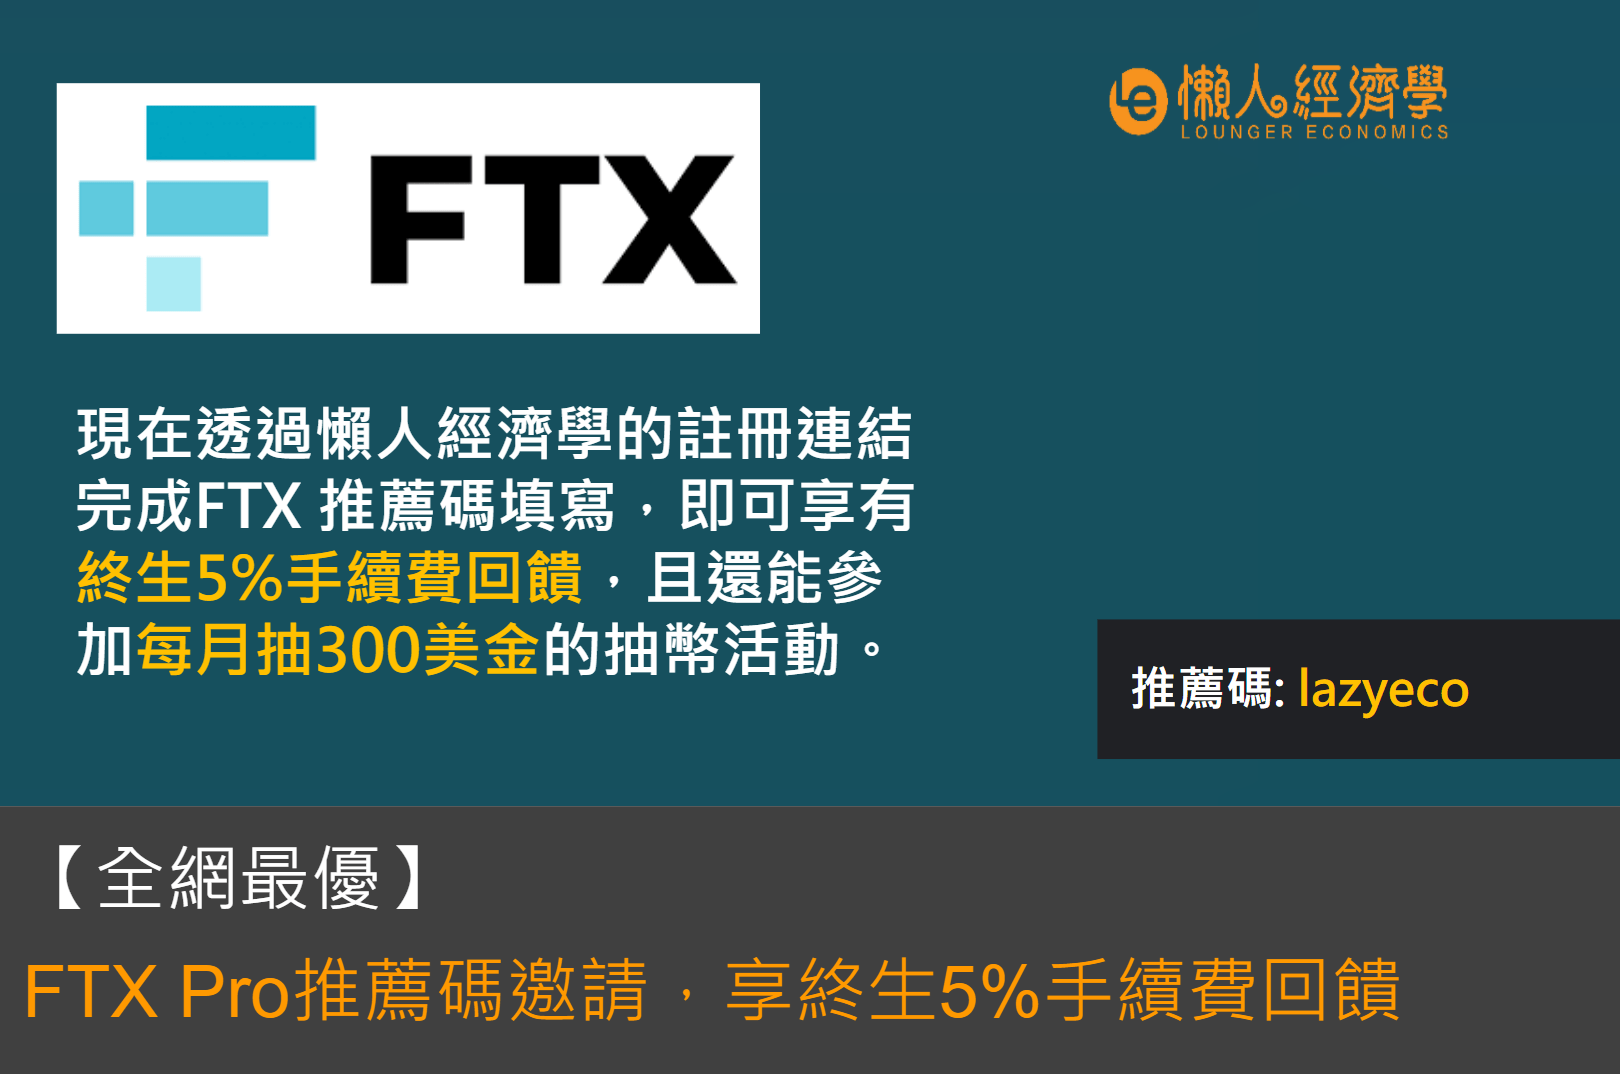 【全網最優】FTX Pro 推薦碼 lazyeco，邀請享終生 5% 手續費回饋 + 300 U每月抽獎